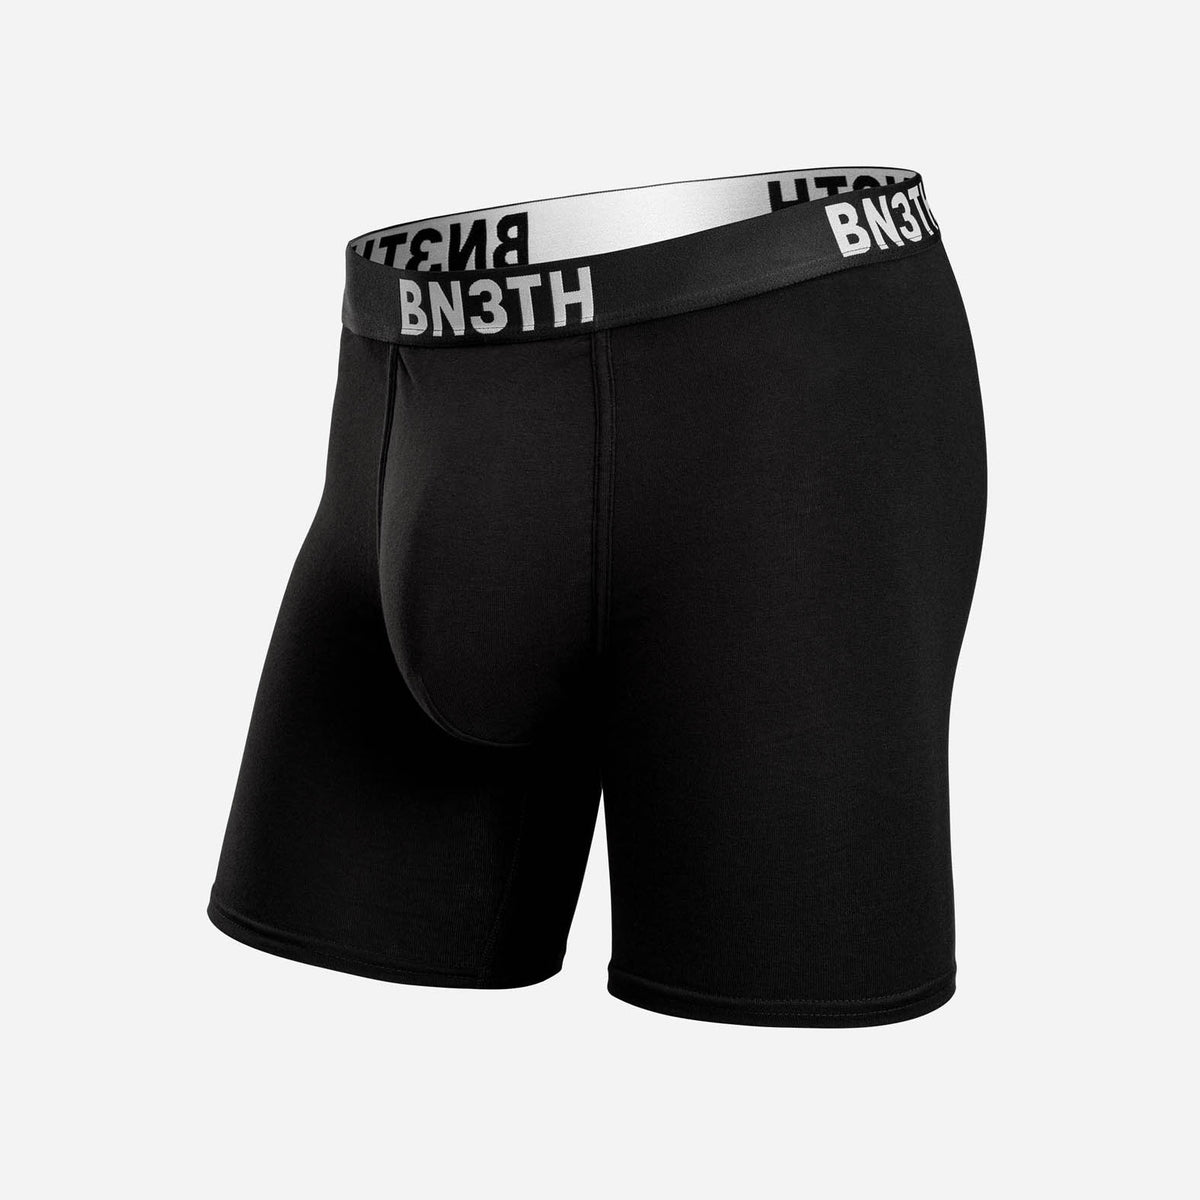 Pro Boxer Brief: Madsteez  BN3TH Underwear –